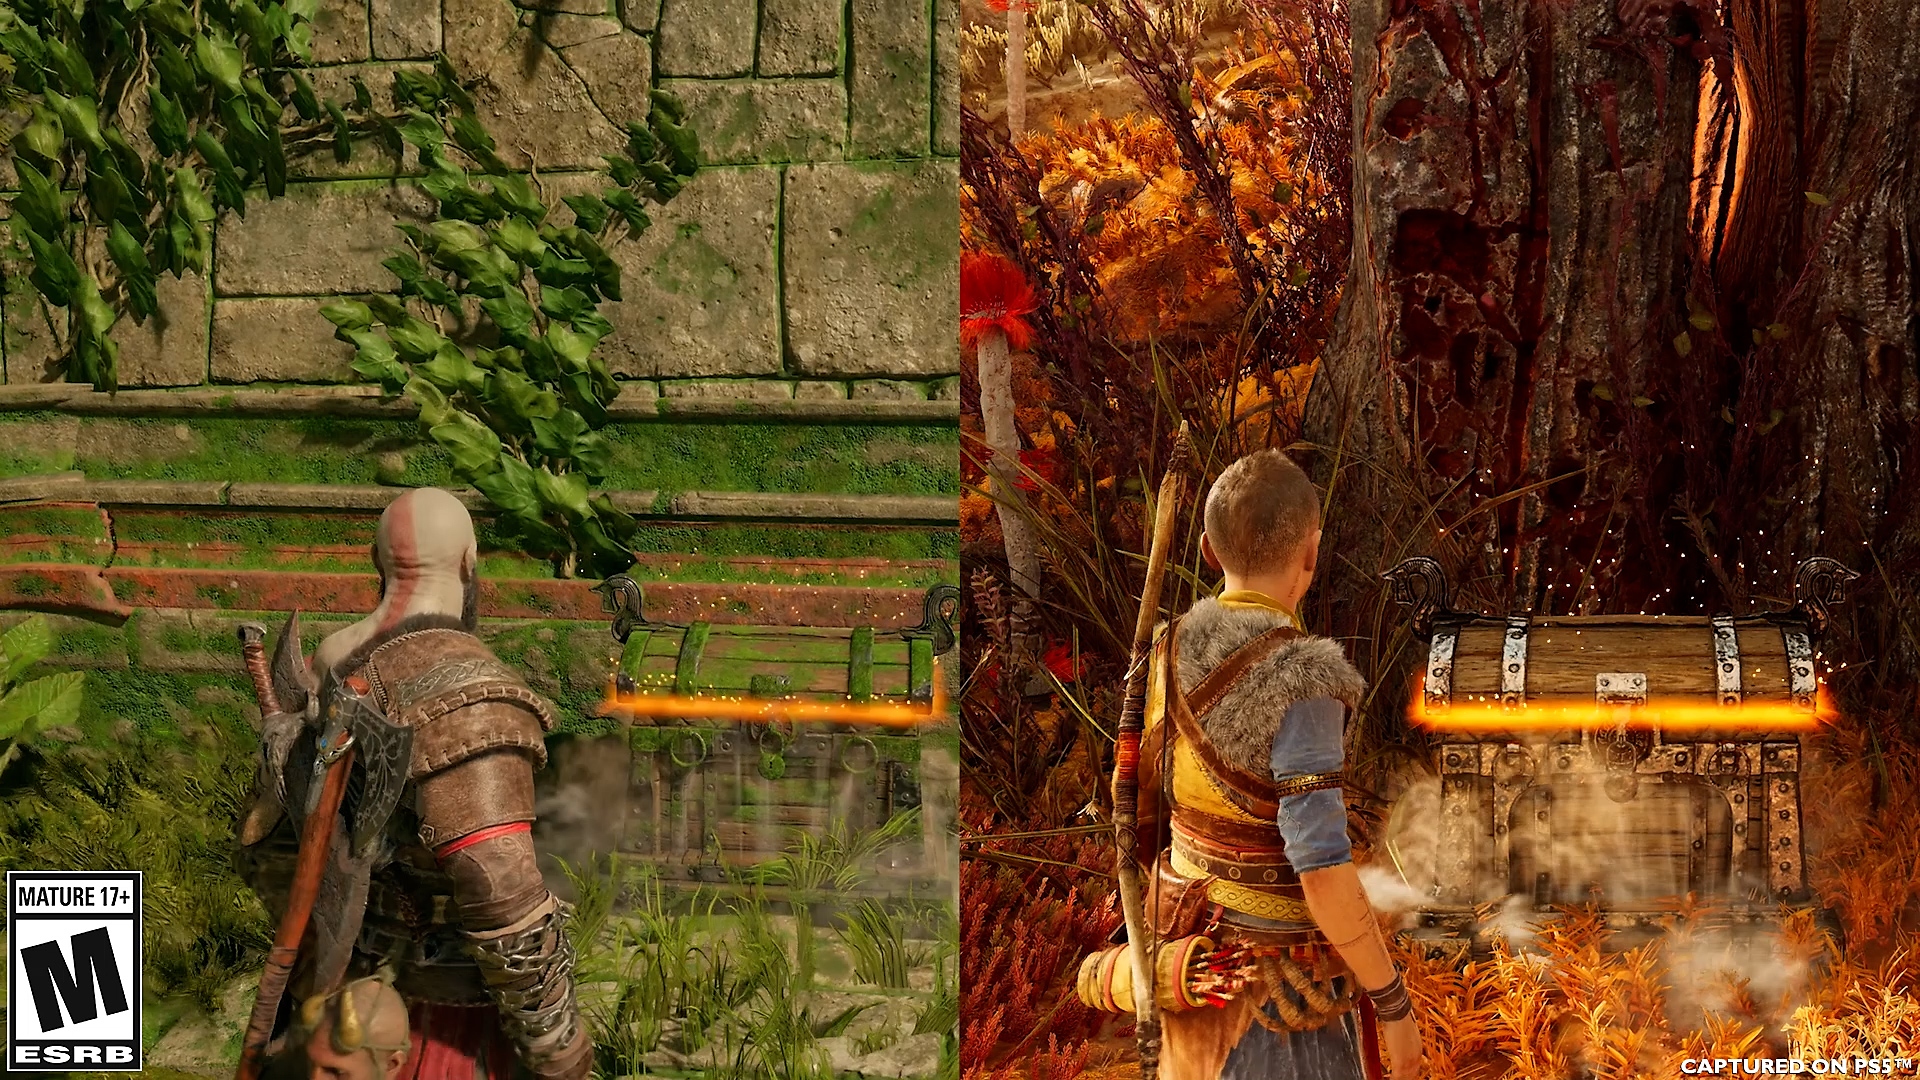 Porównanie animacji otwierania skrzyń przez Atreusa i Kratosa w God of War Ragnarök.